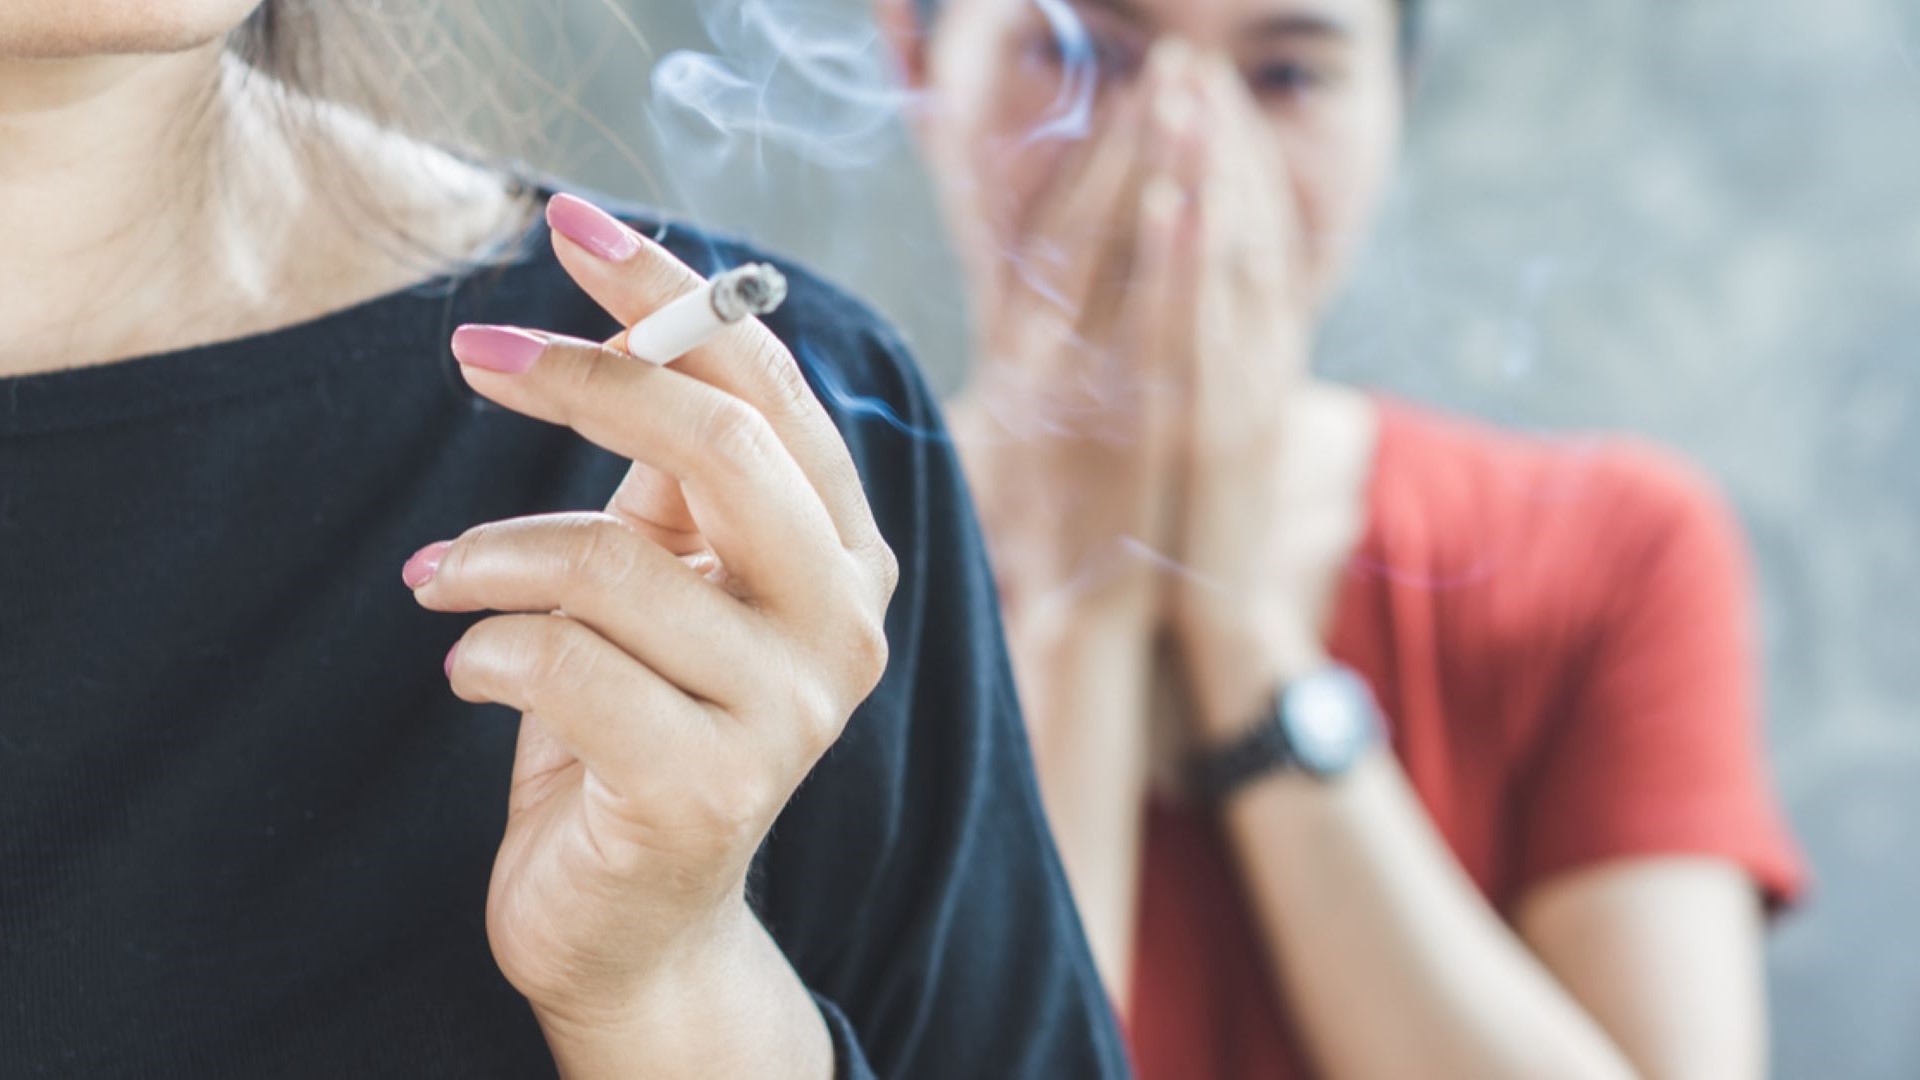 mitos del tabaco que debes conocer